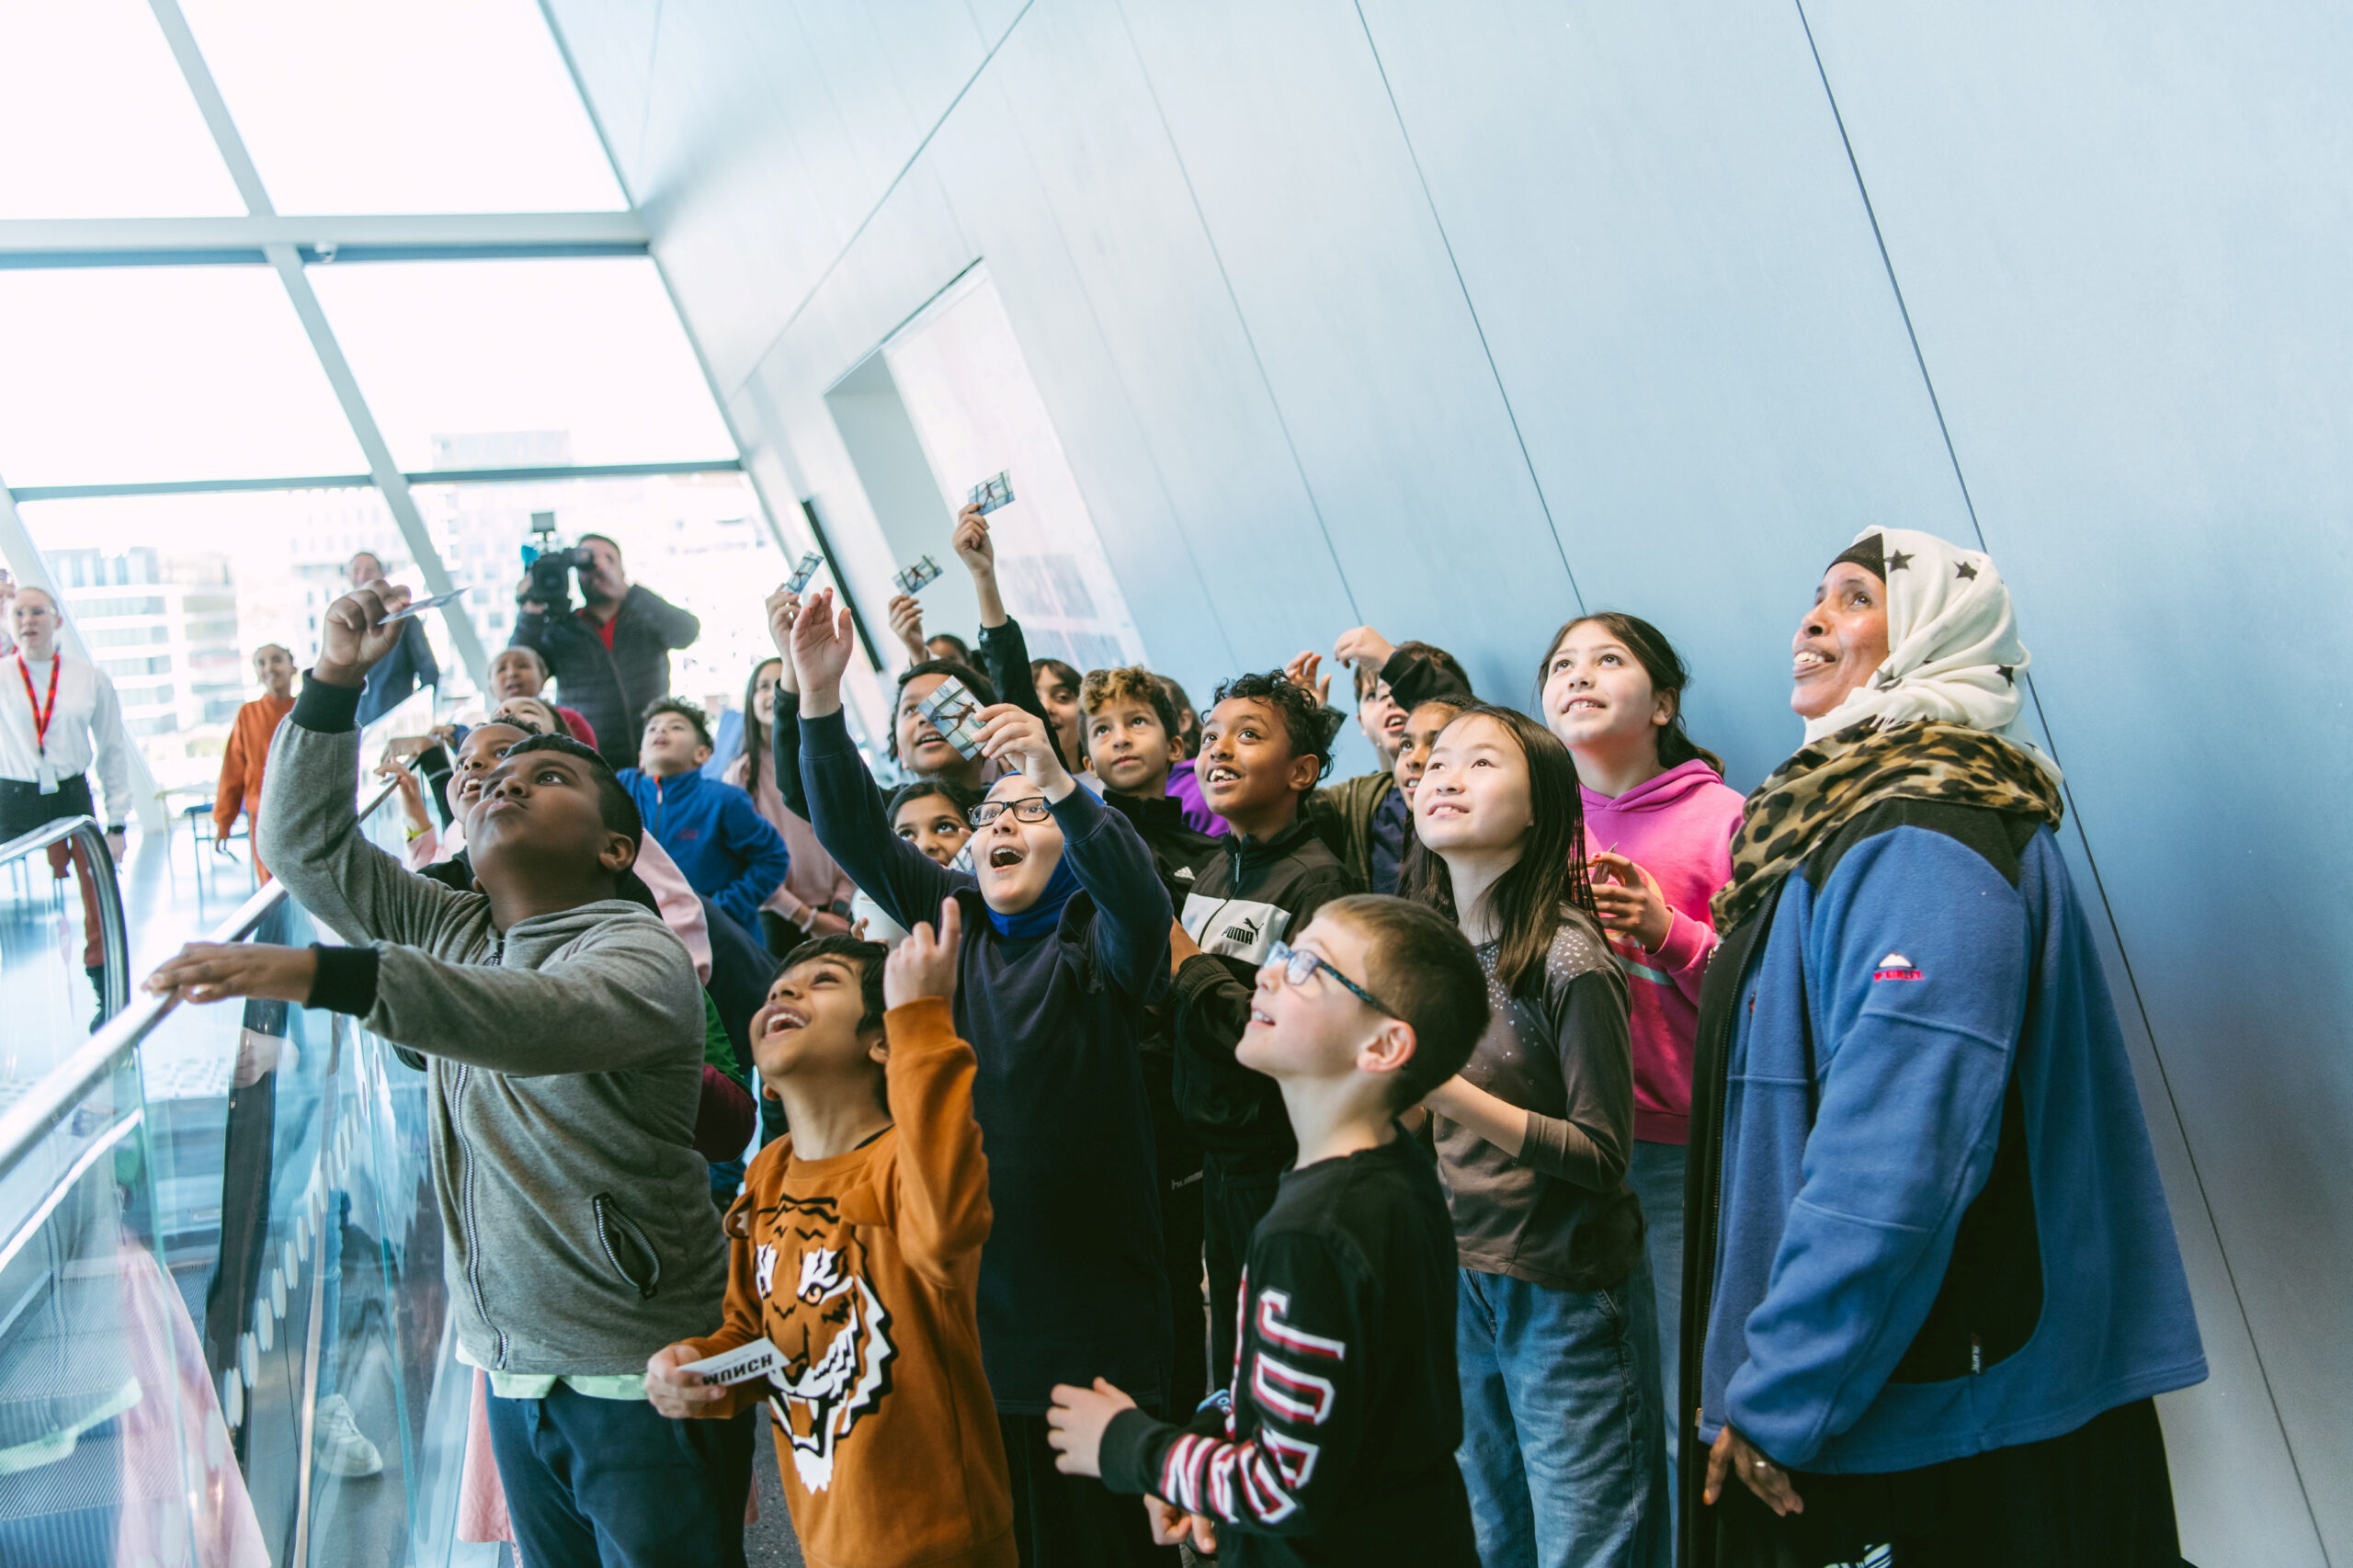 Alle barn og unge skal ha tilgang på kulturopplevelser. Nå åpner MUNCH opp for gratis inngang for barn og unge helt opp til 18 år. (Foto: Munchmuseet.)